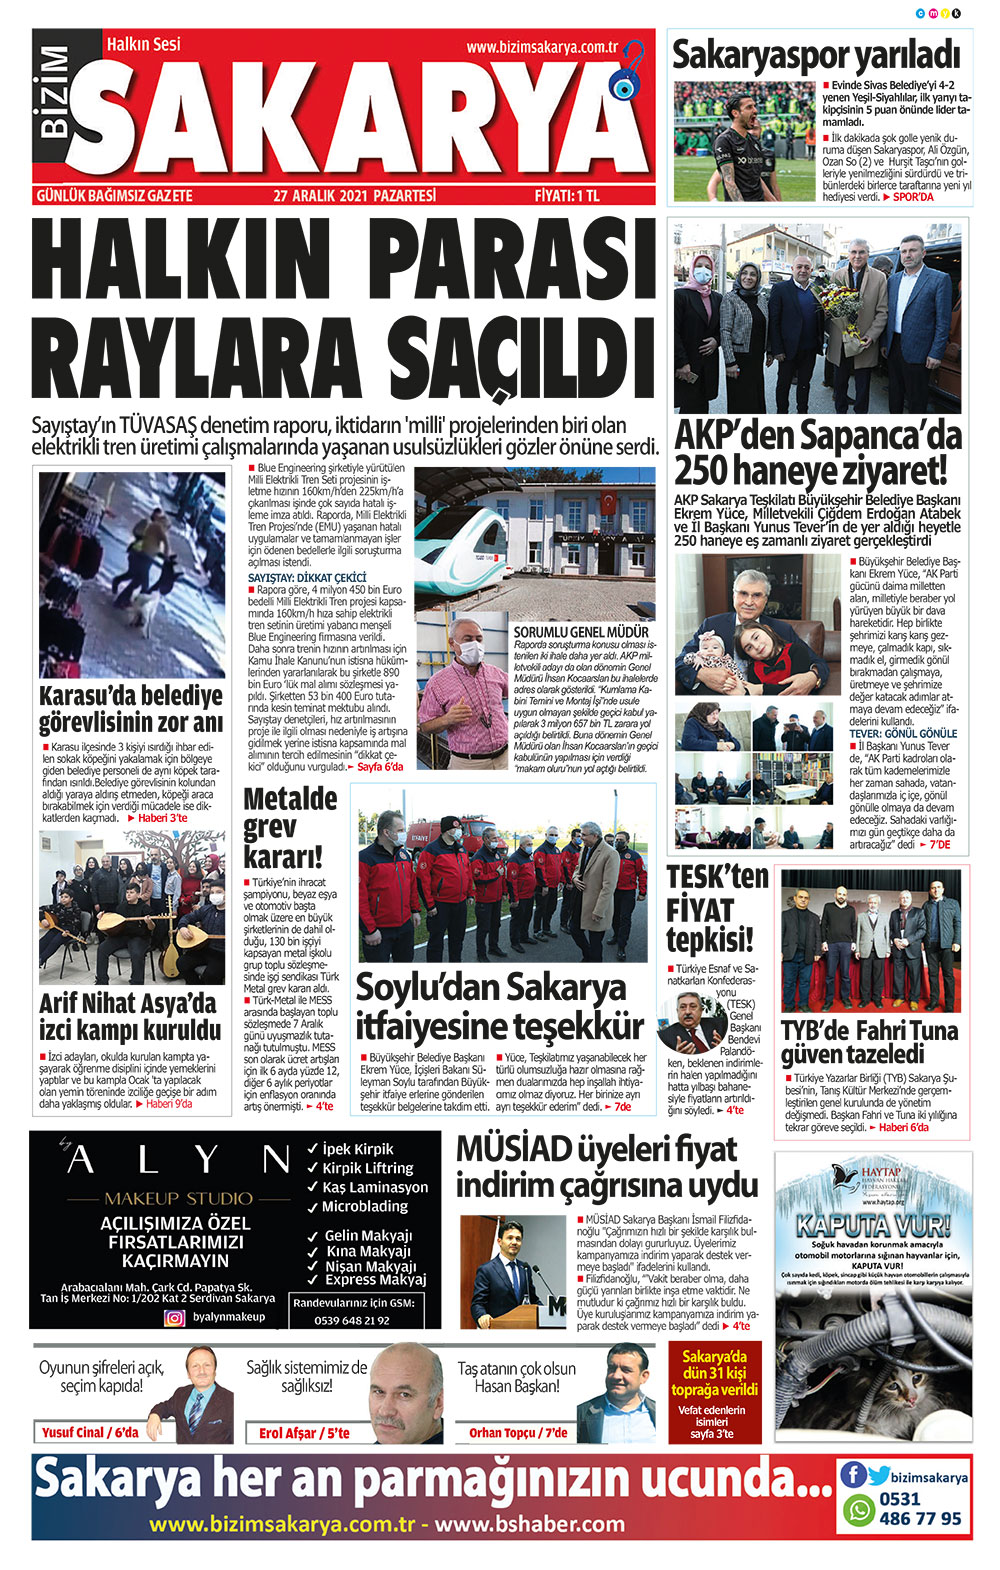 Bizim Sakarya Gazetesi - 27.12.2021 Manşeti